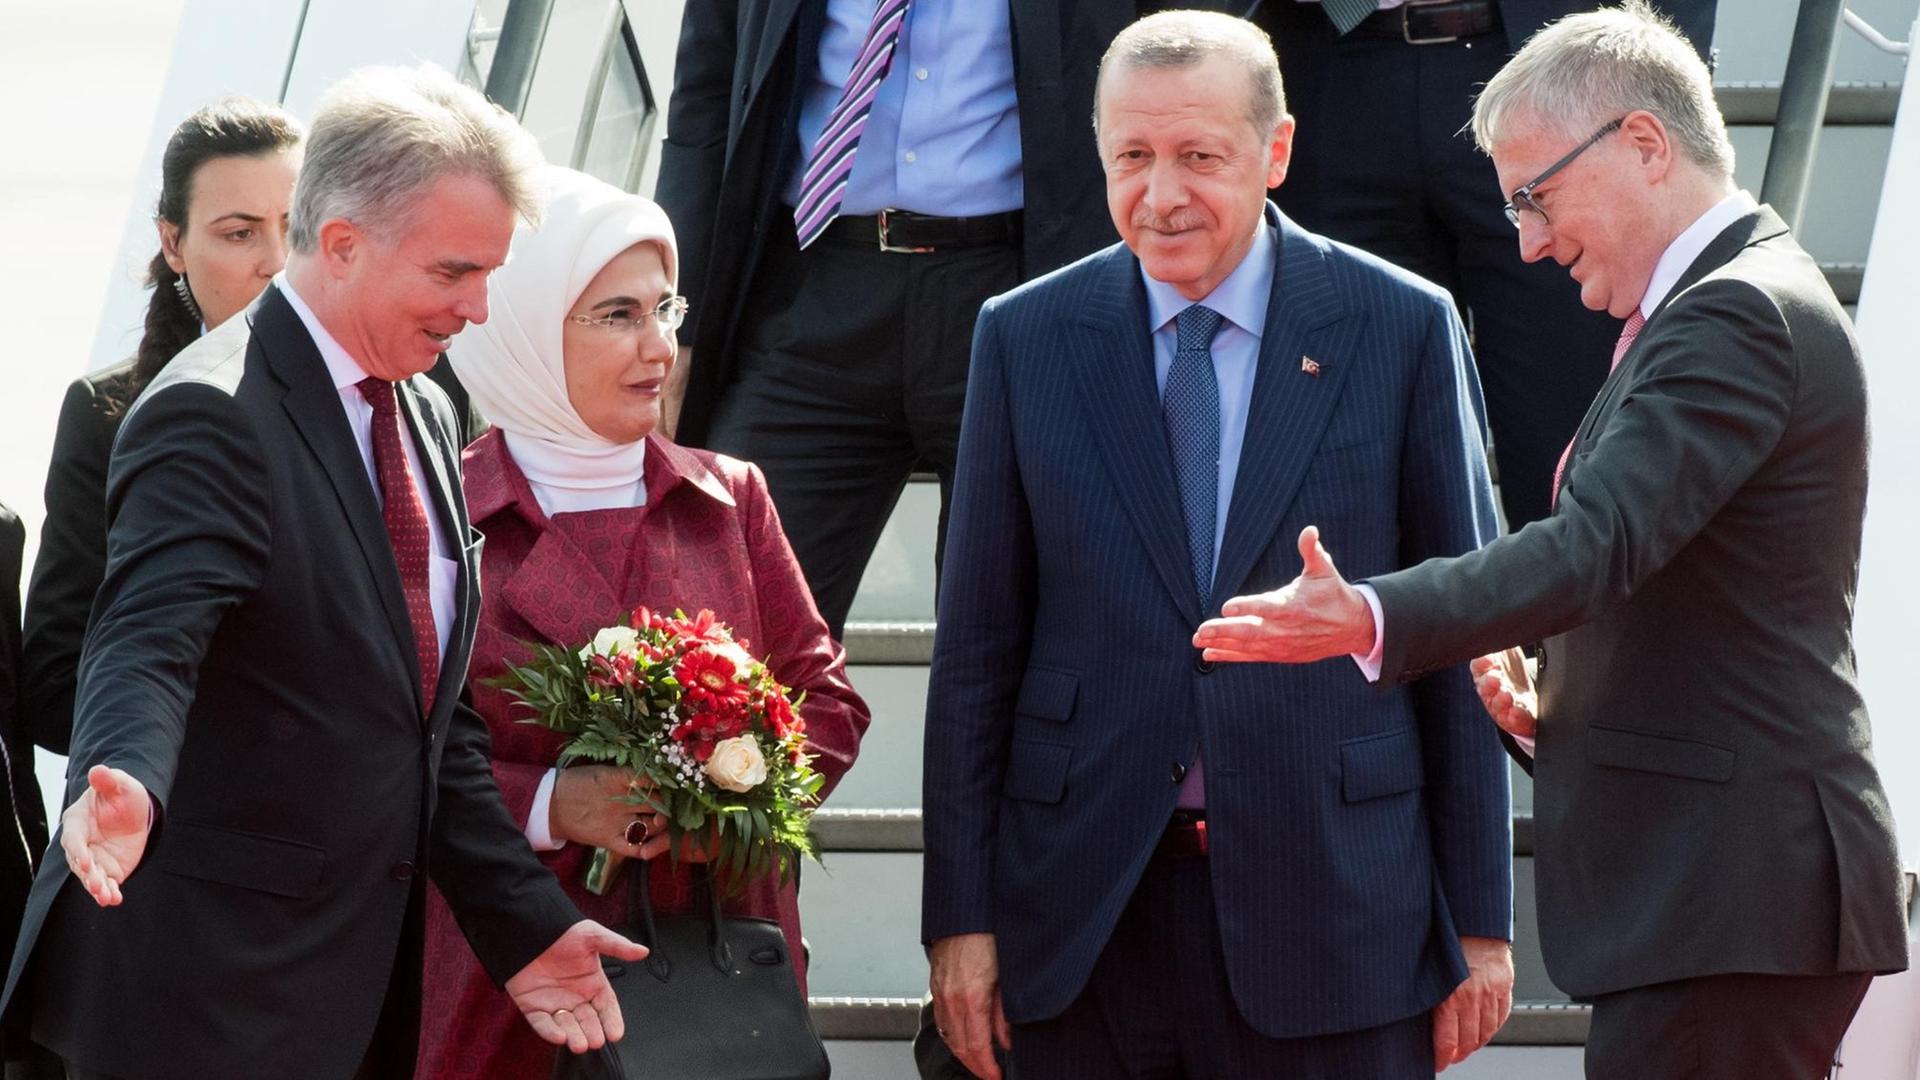 Recep Tayyip Erdogan (2.v.r), Präsident der Türkei, und seine Frau Emine Erdogan kommen auf dem militärischen Teil des Flughafen Tegel an und werden vom Chef des Protokolls, Konrad Arz von Straussenburg (l), und Stephan Steinlein (r), Chef des Bundespräsidialamts, begrüßt.